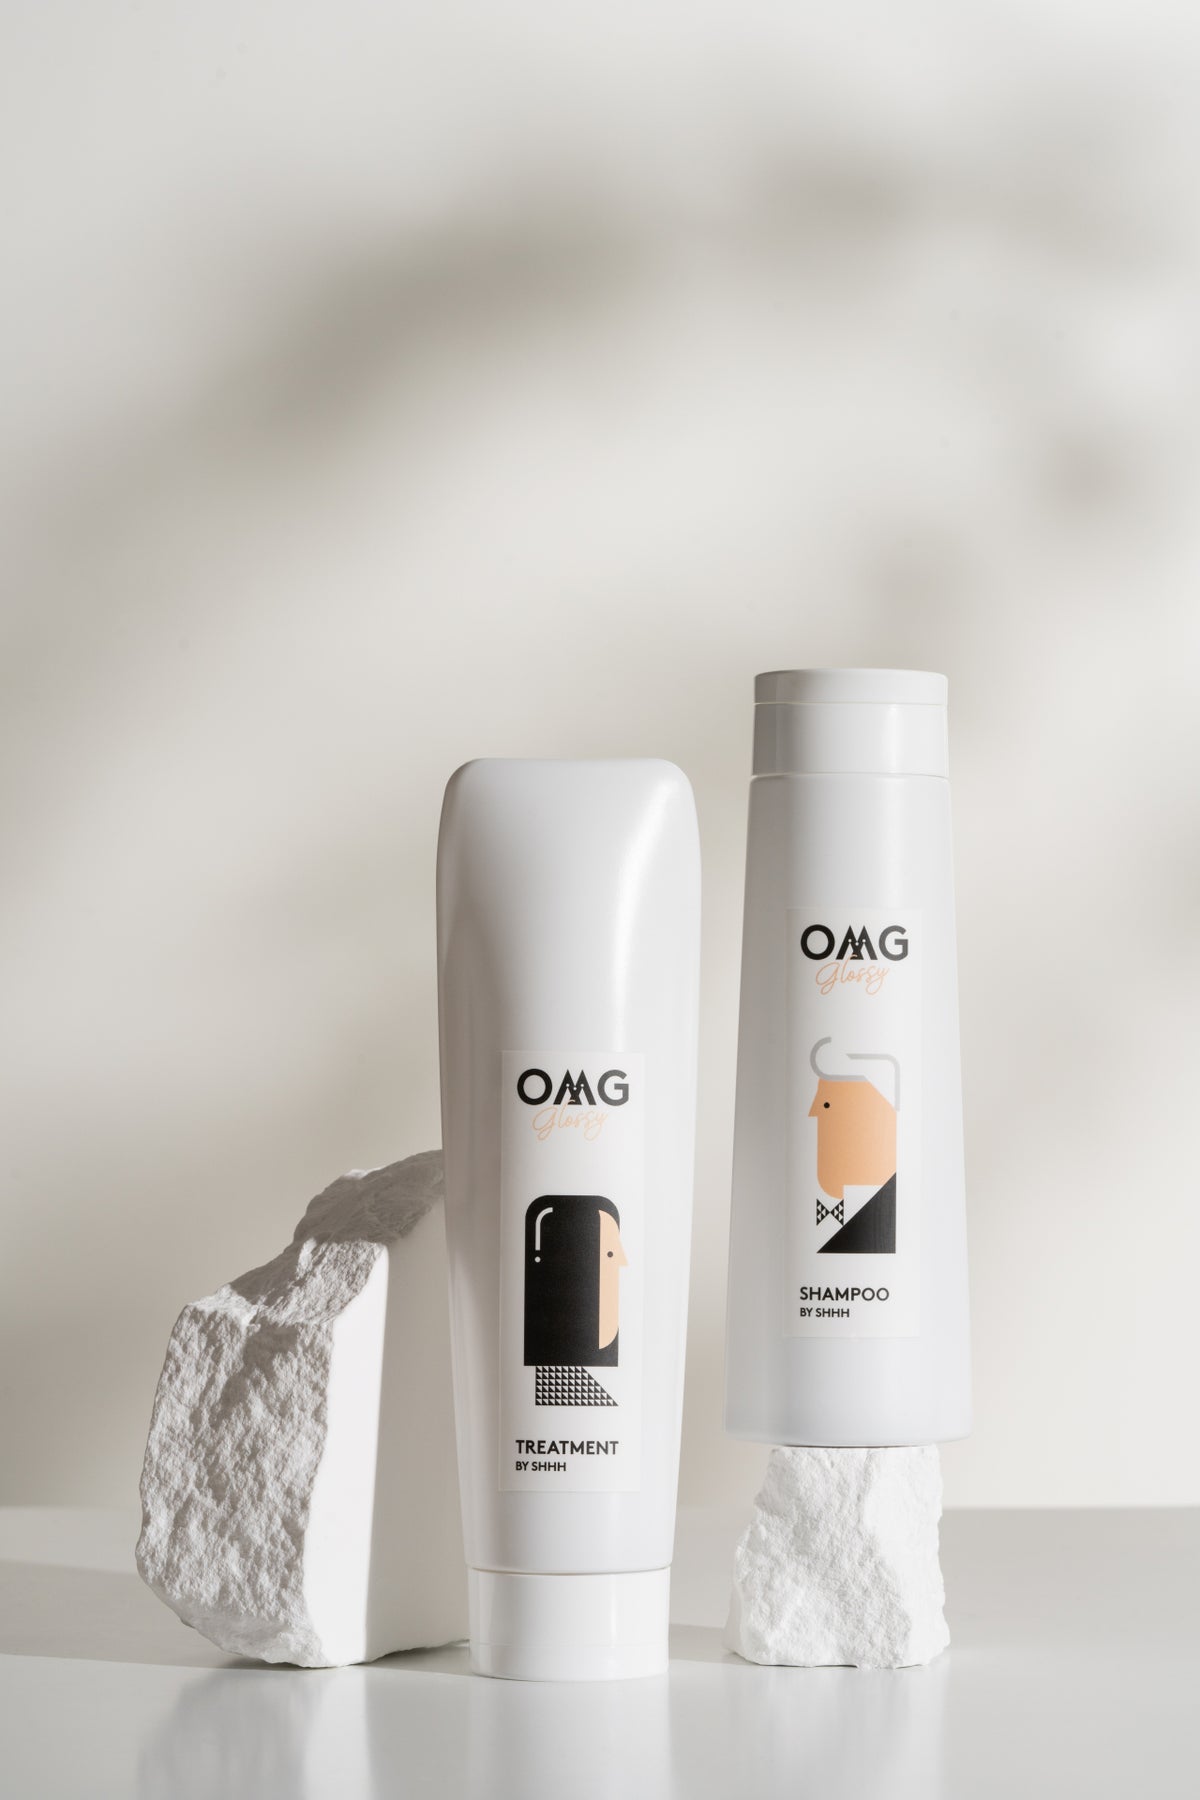 OMG Glossy Shampoo (250mL)